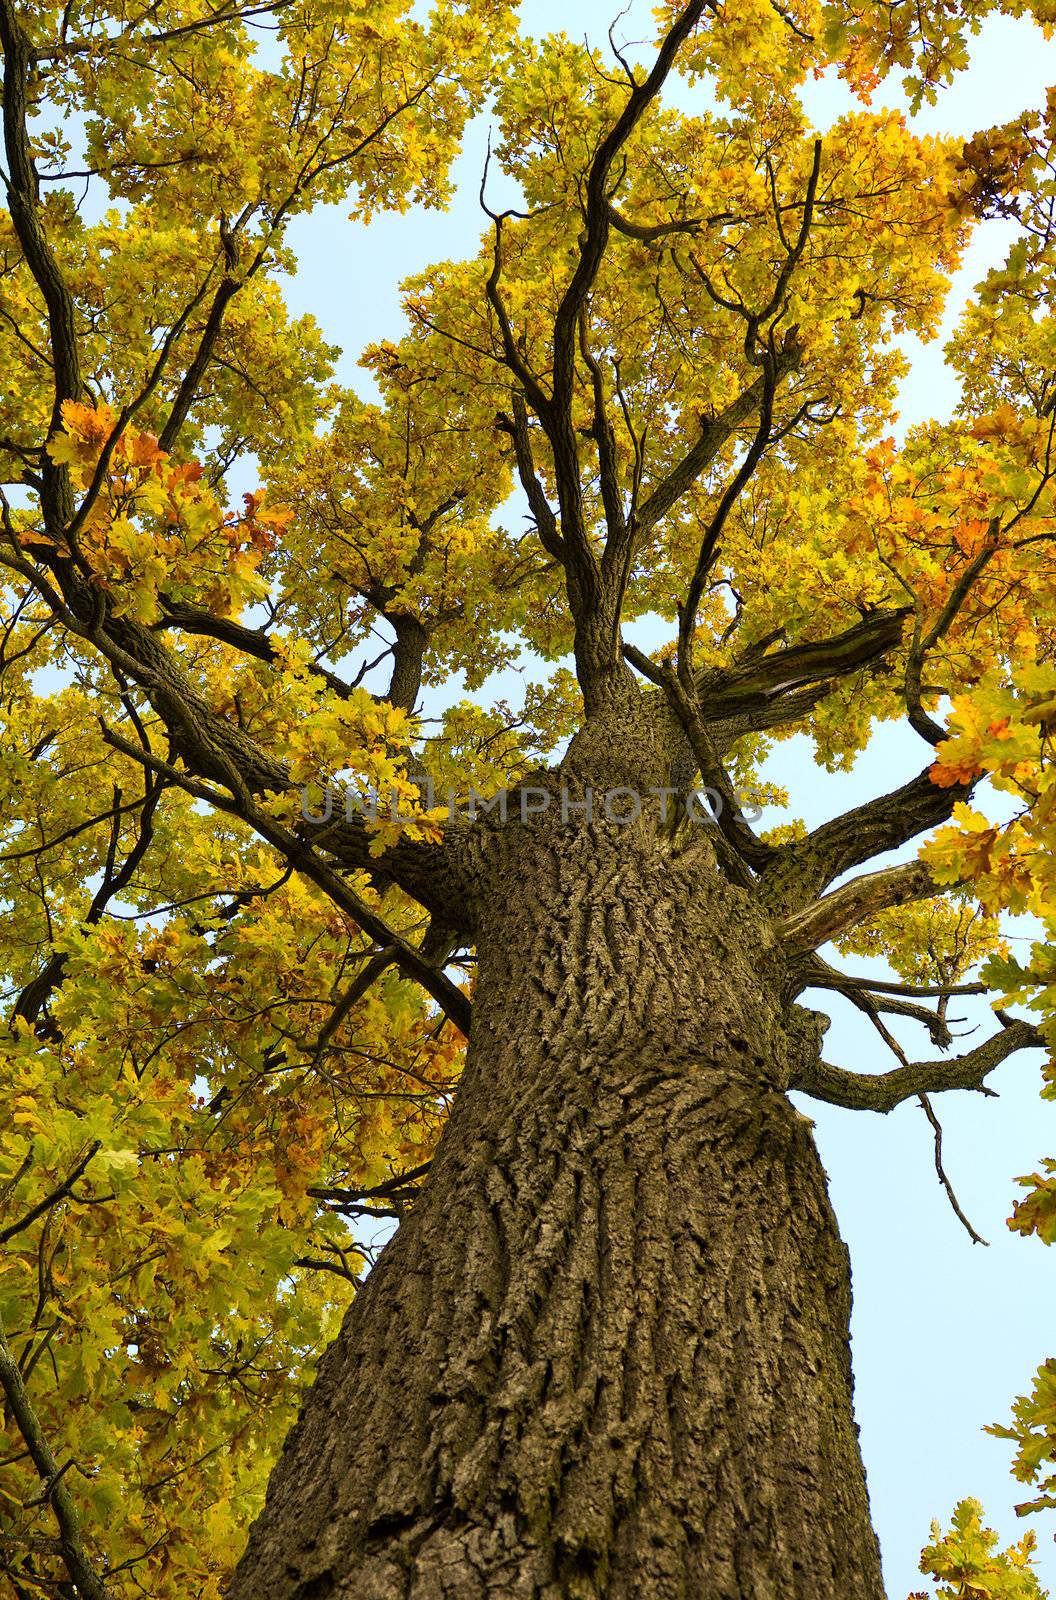 oak tree in autumn by Alekcey